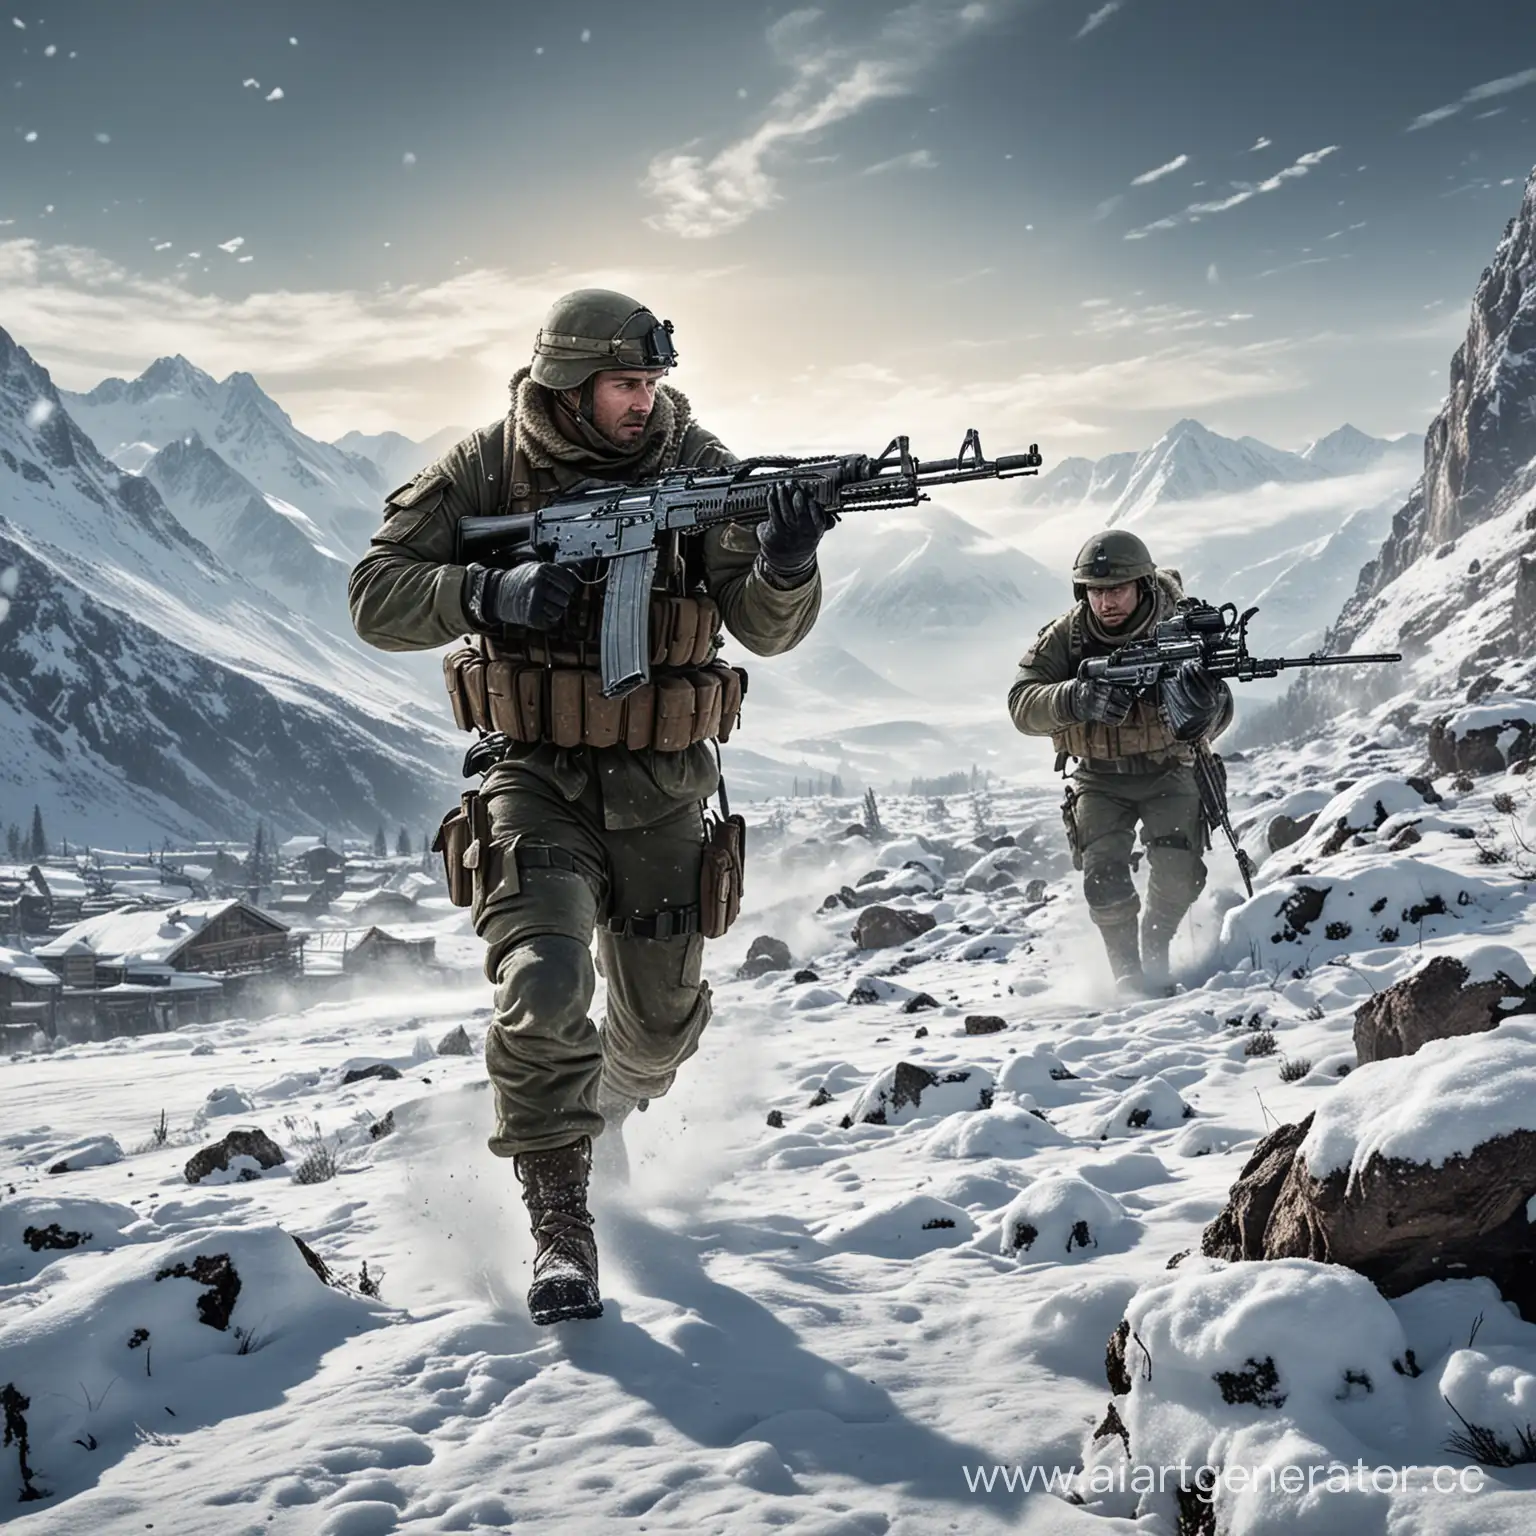 Fierce-Winter-Battle-Armed-Soldiers-in-Mountain-Terrain